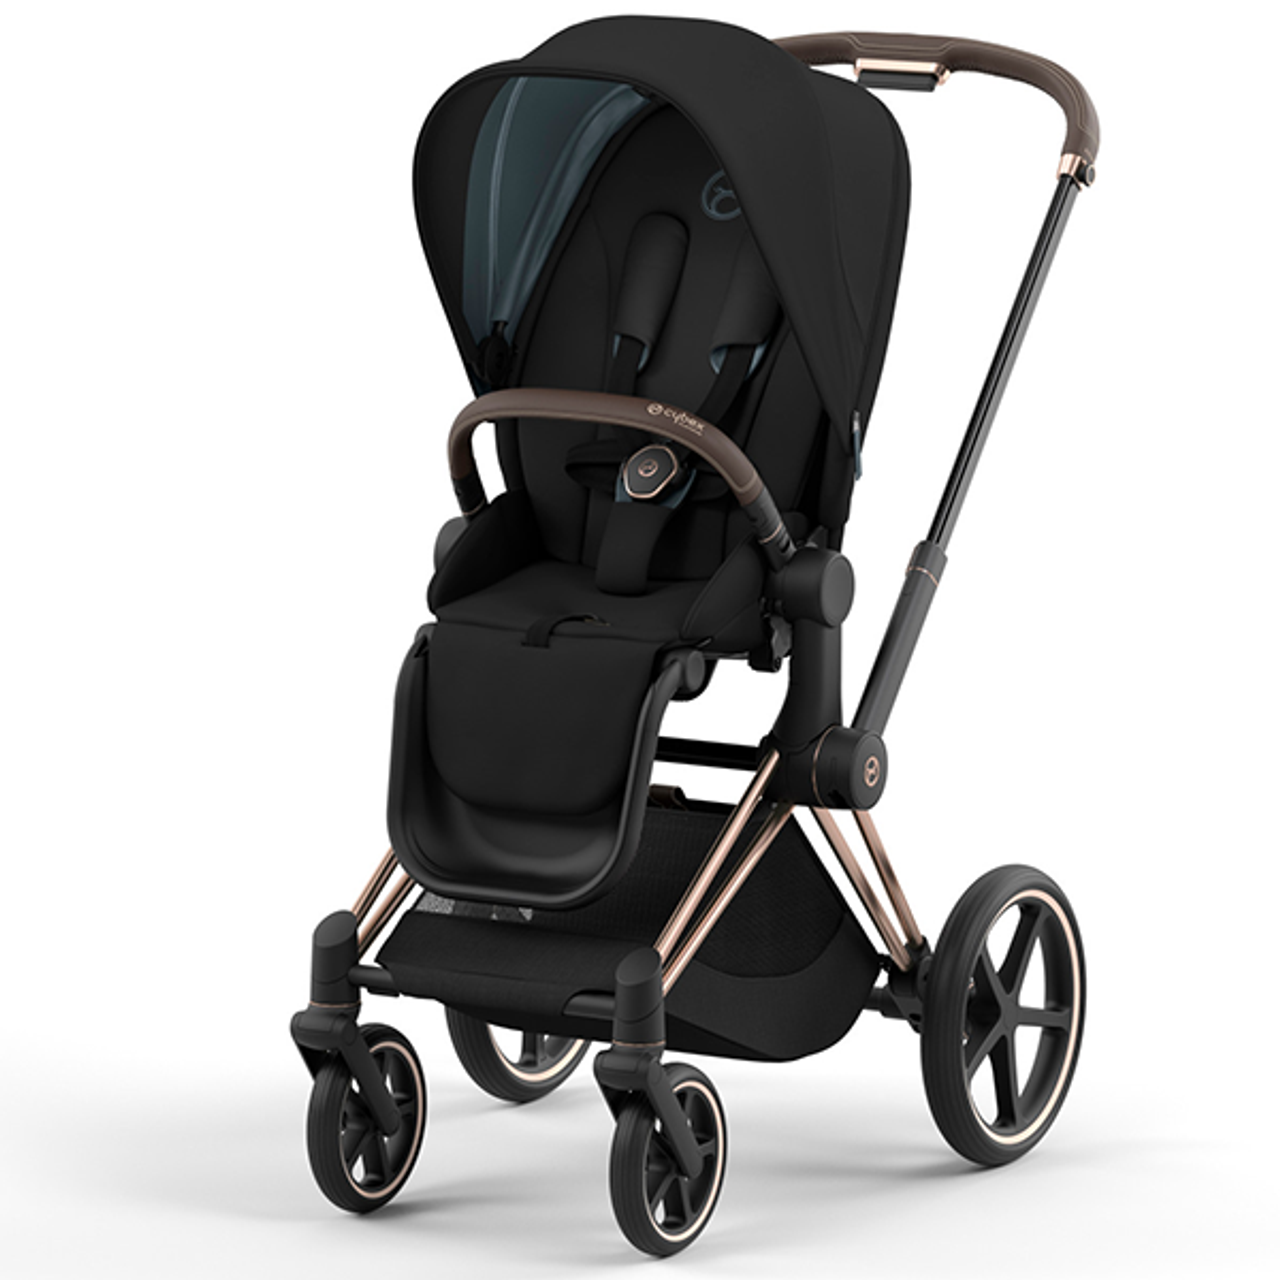 Cybex Priam 4 Stroller, The Best Lightweight Stroller for Newborns